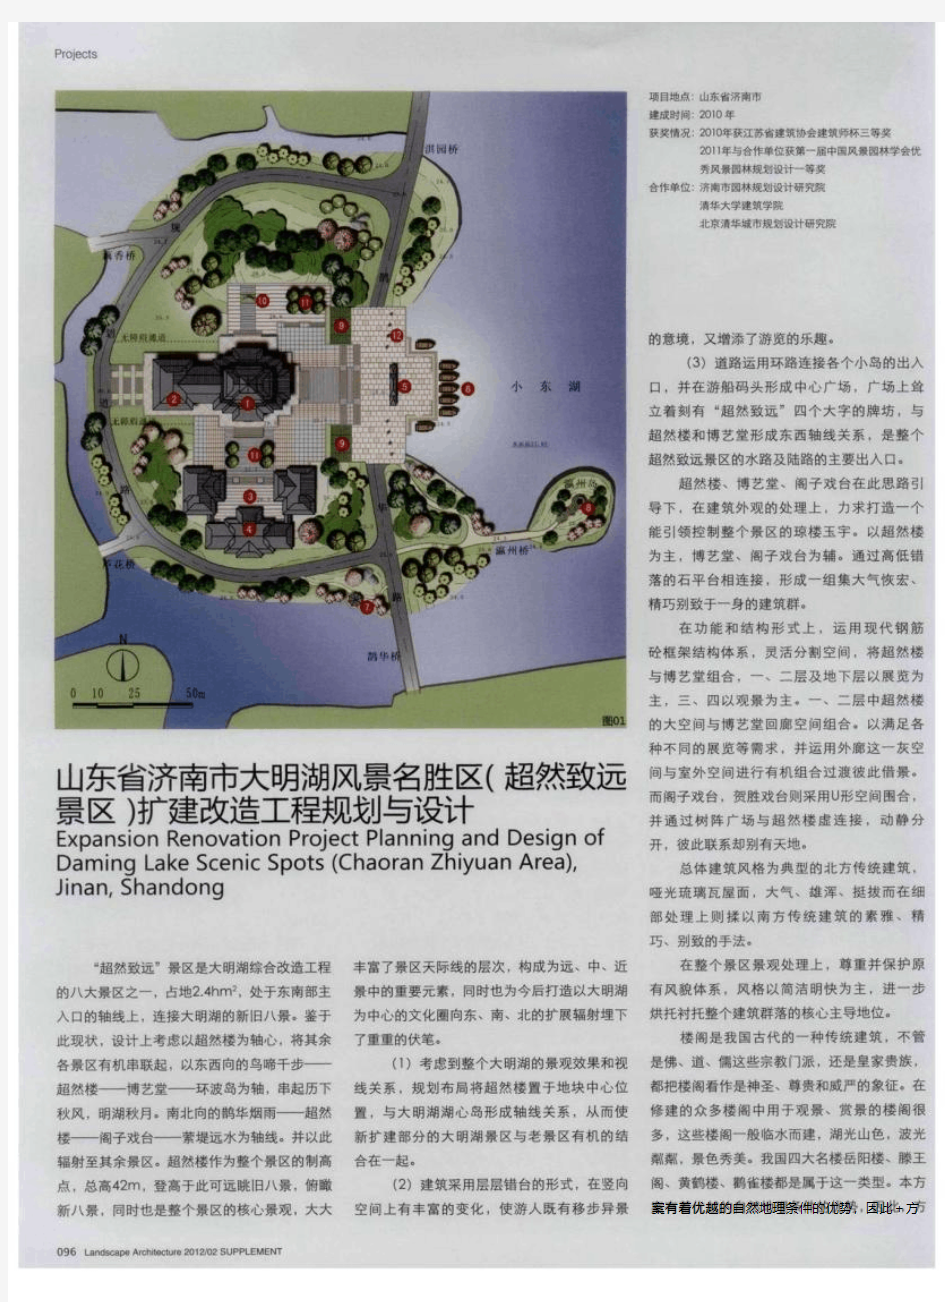 山东省济南市大明湖风景名胜区(超然致远景区)扩建改造工程规划与设计